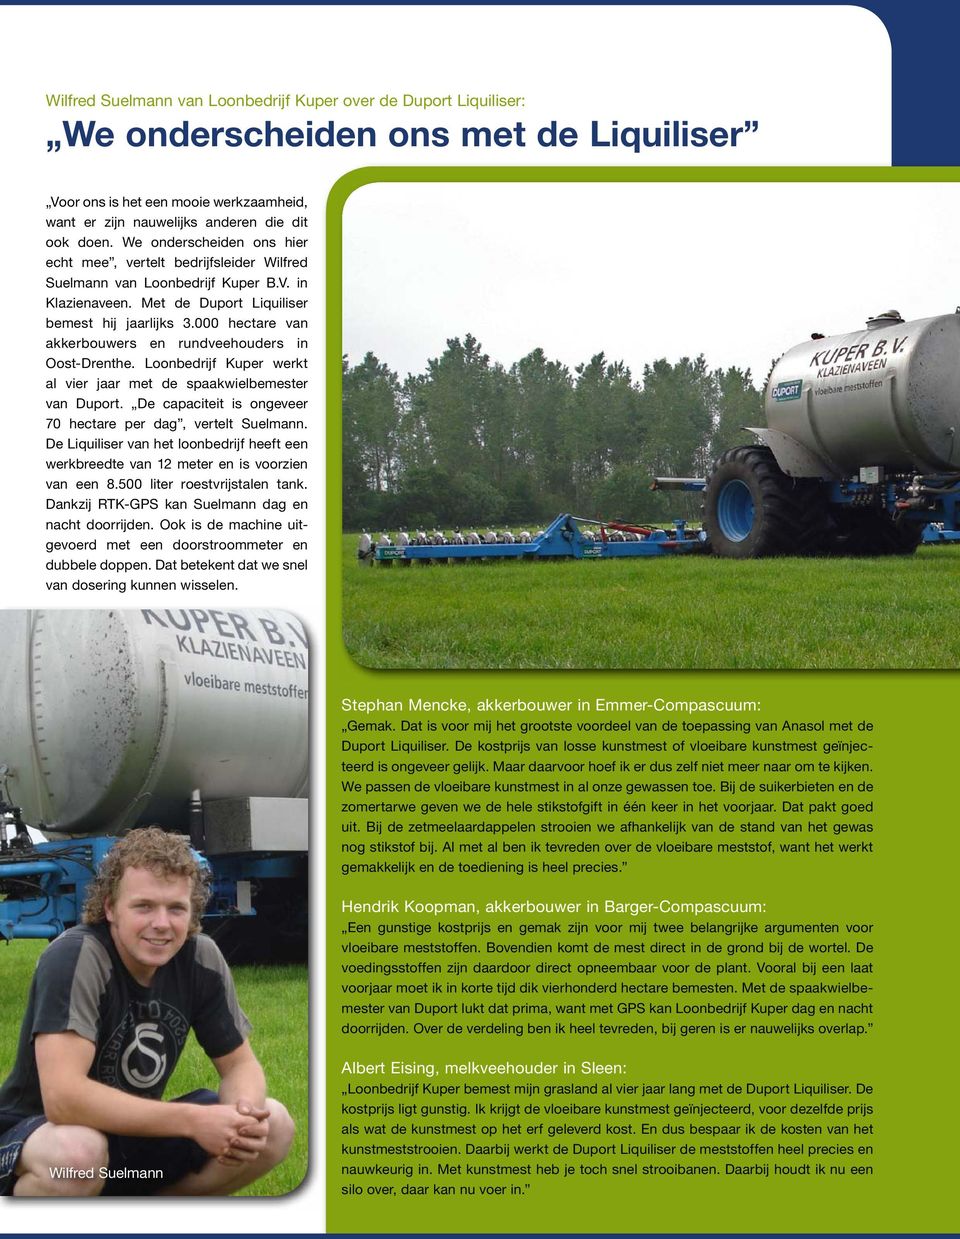 000 hectare van akkerbouwers en rundveehouders in Oost-Drenthe. Loonbedrijf Kuper werkt al vier jaar met de spaakwielbemester van Duport.